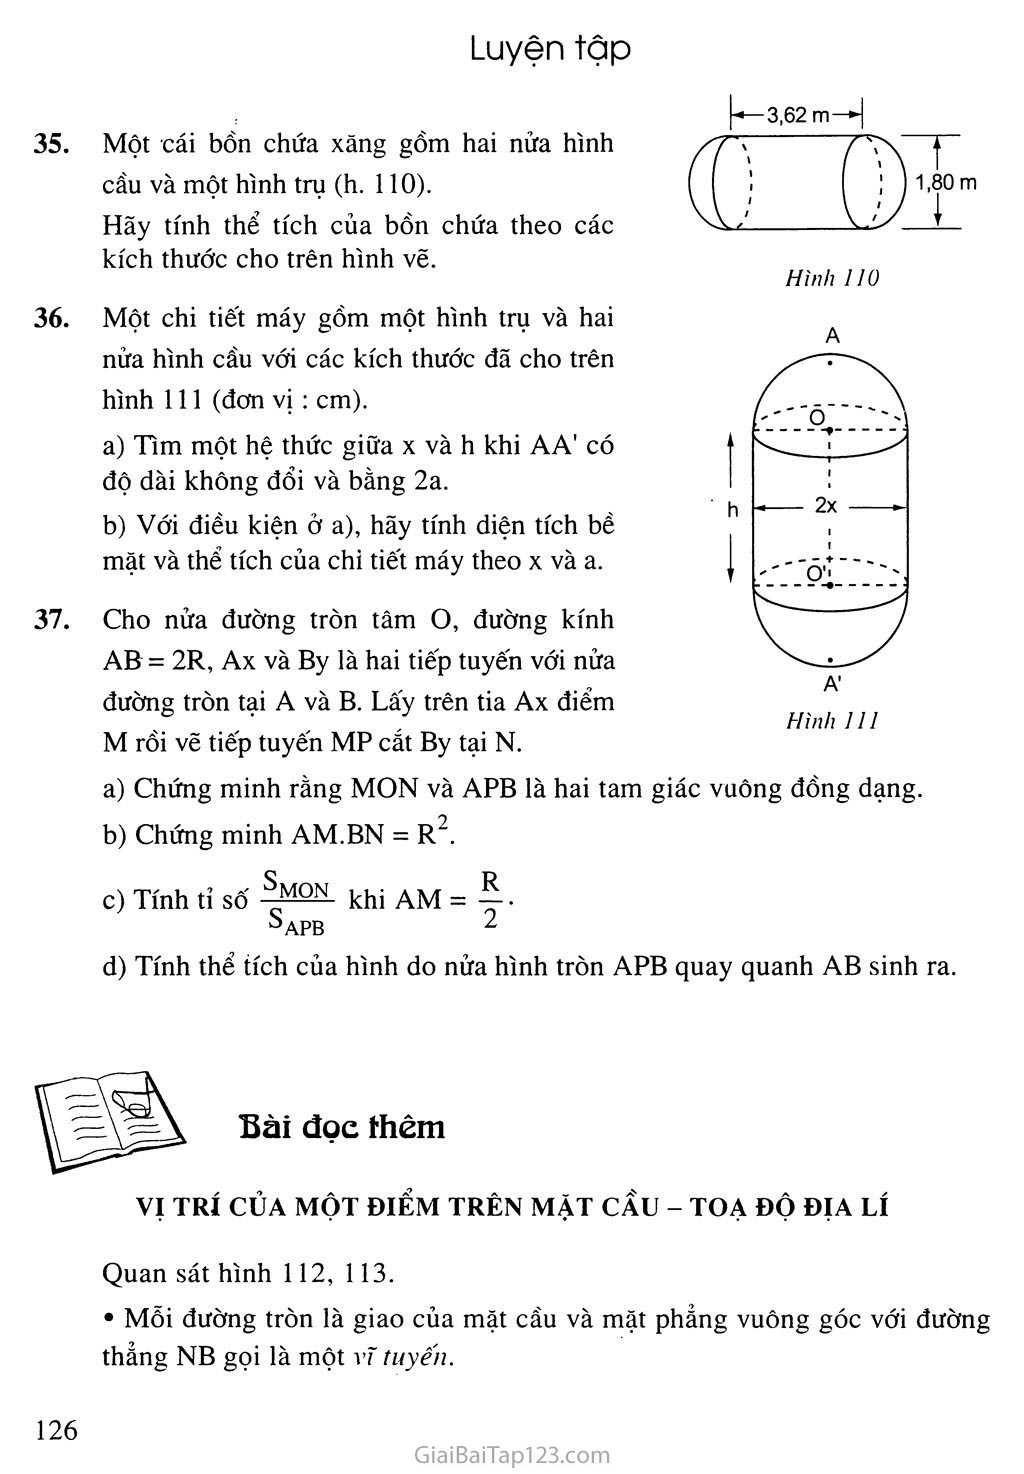 Bài 3. Hình cầu - Diện tích mặt cầu và thể tích mặt cầu trang 6